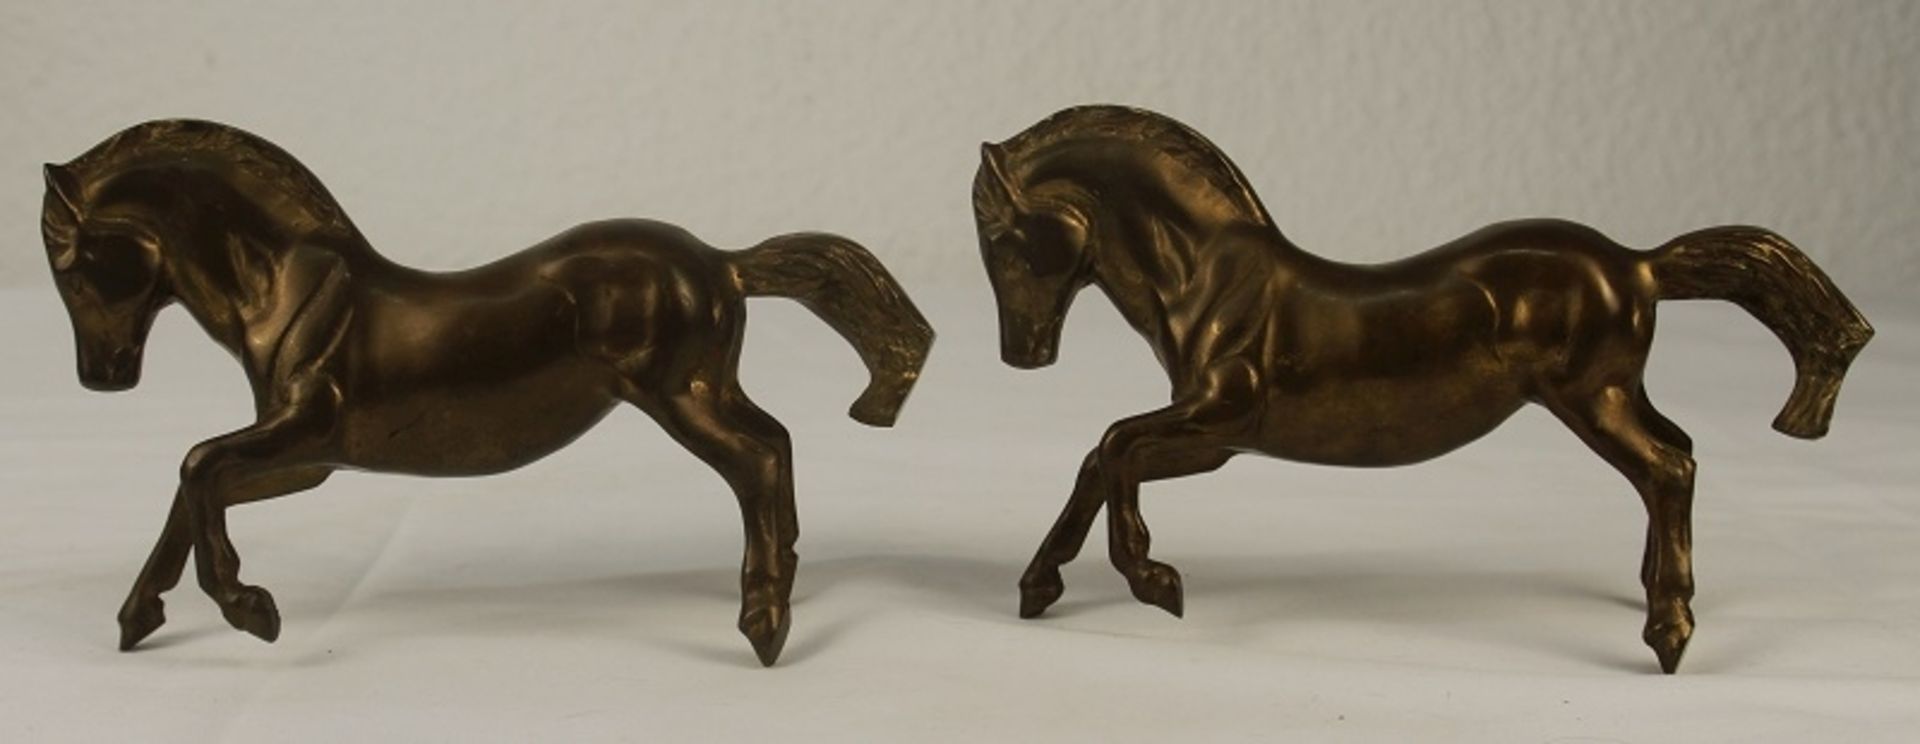 Buchstützen 2 steigende Pferde Hengste Messingfiguren - Bild 3 aus 4